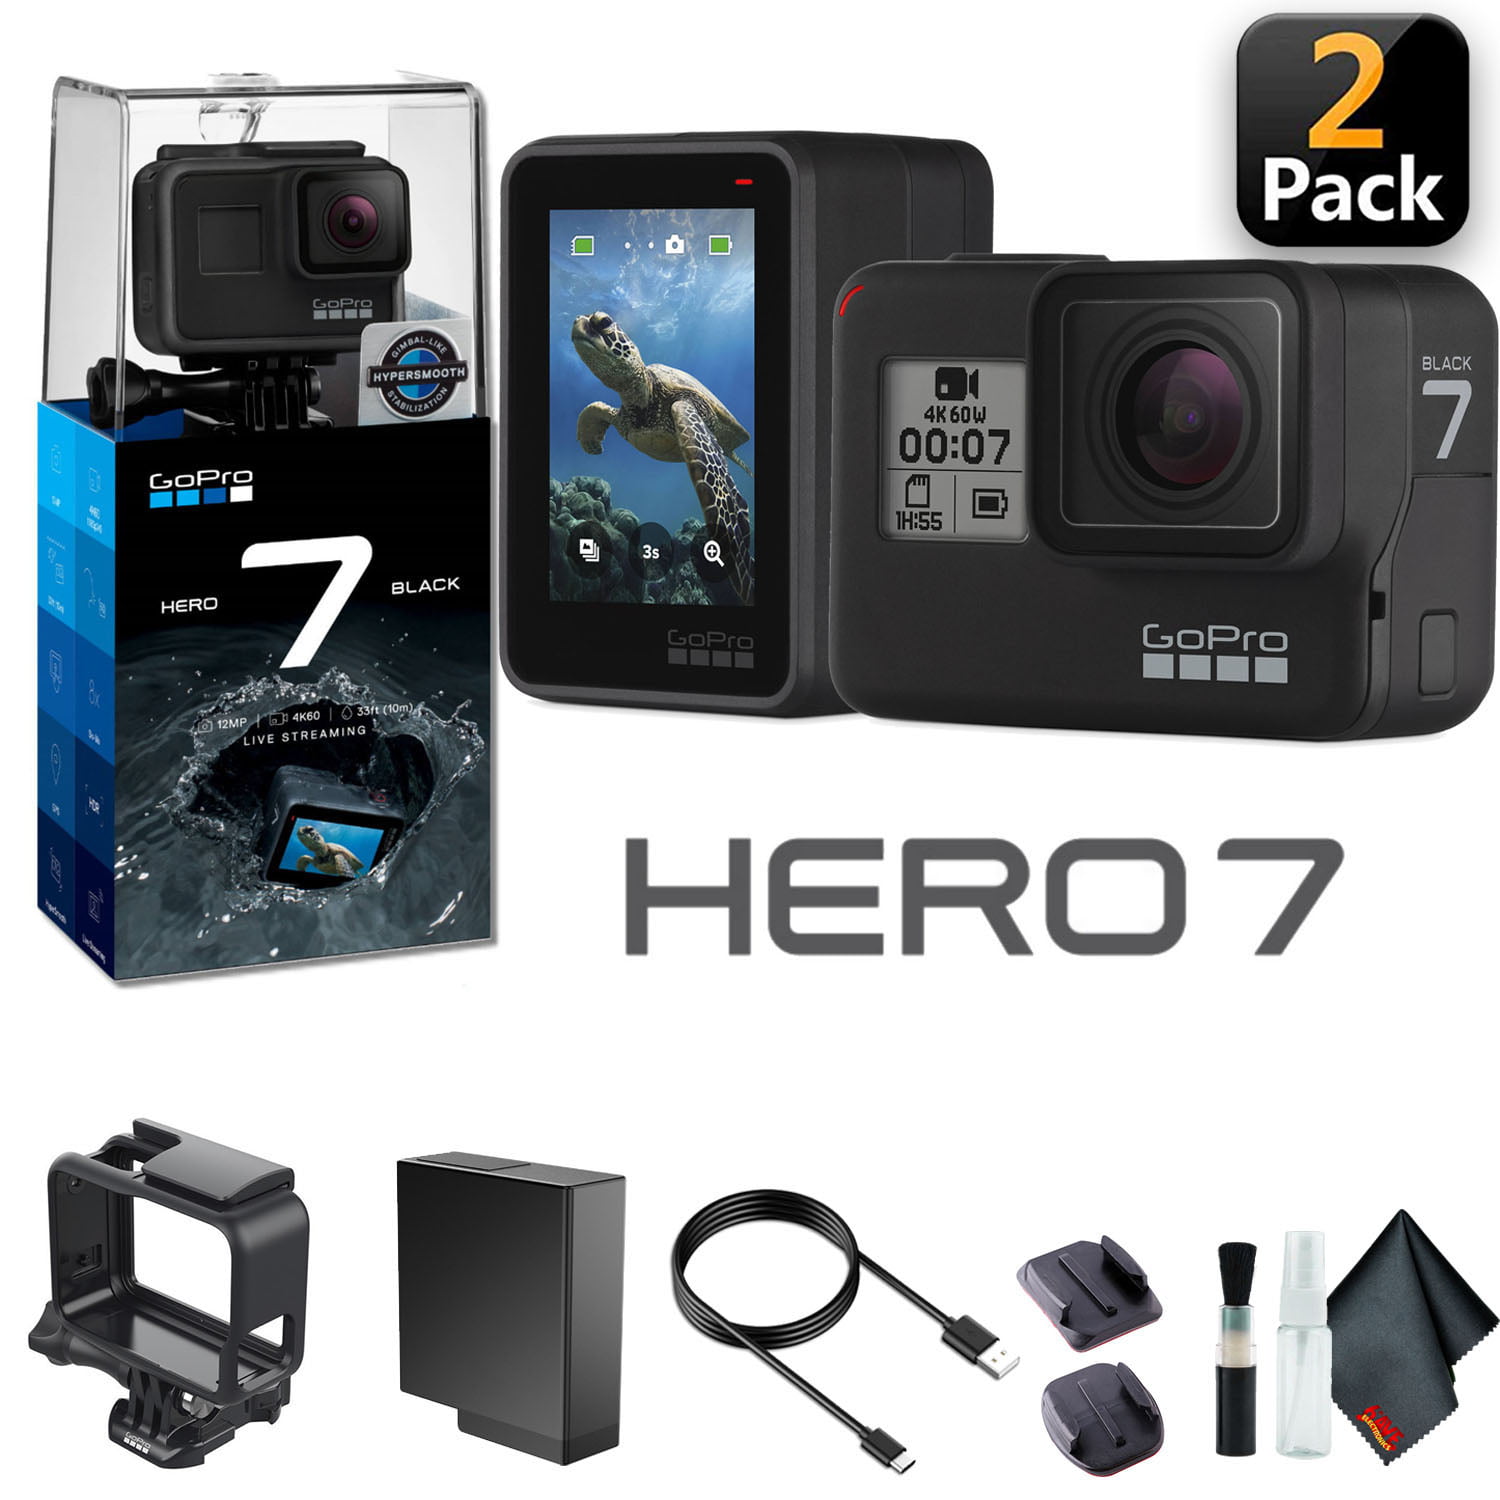 カメラ ビデオカメラ GoPro HERO7 Black (2 Pack) - Waterproof Action Camera - Bundle